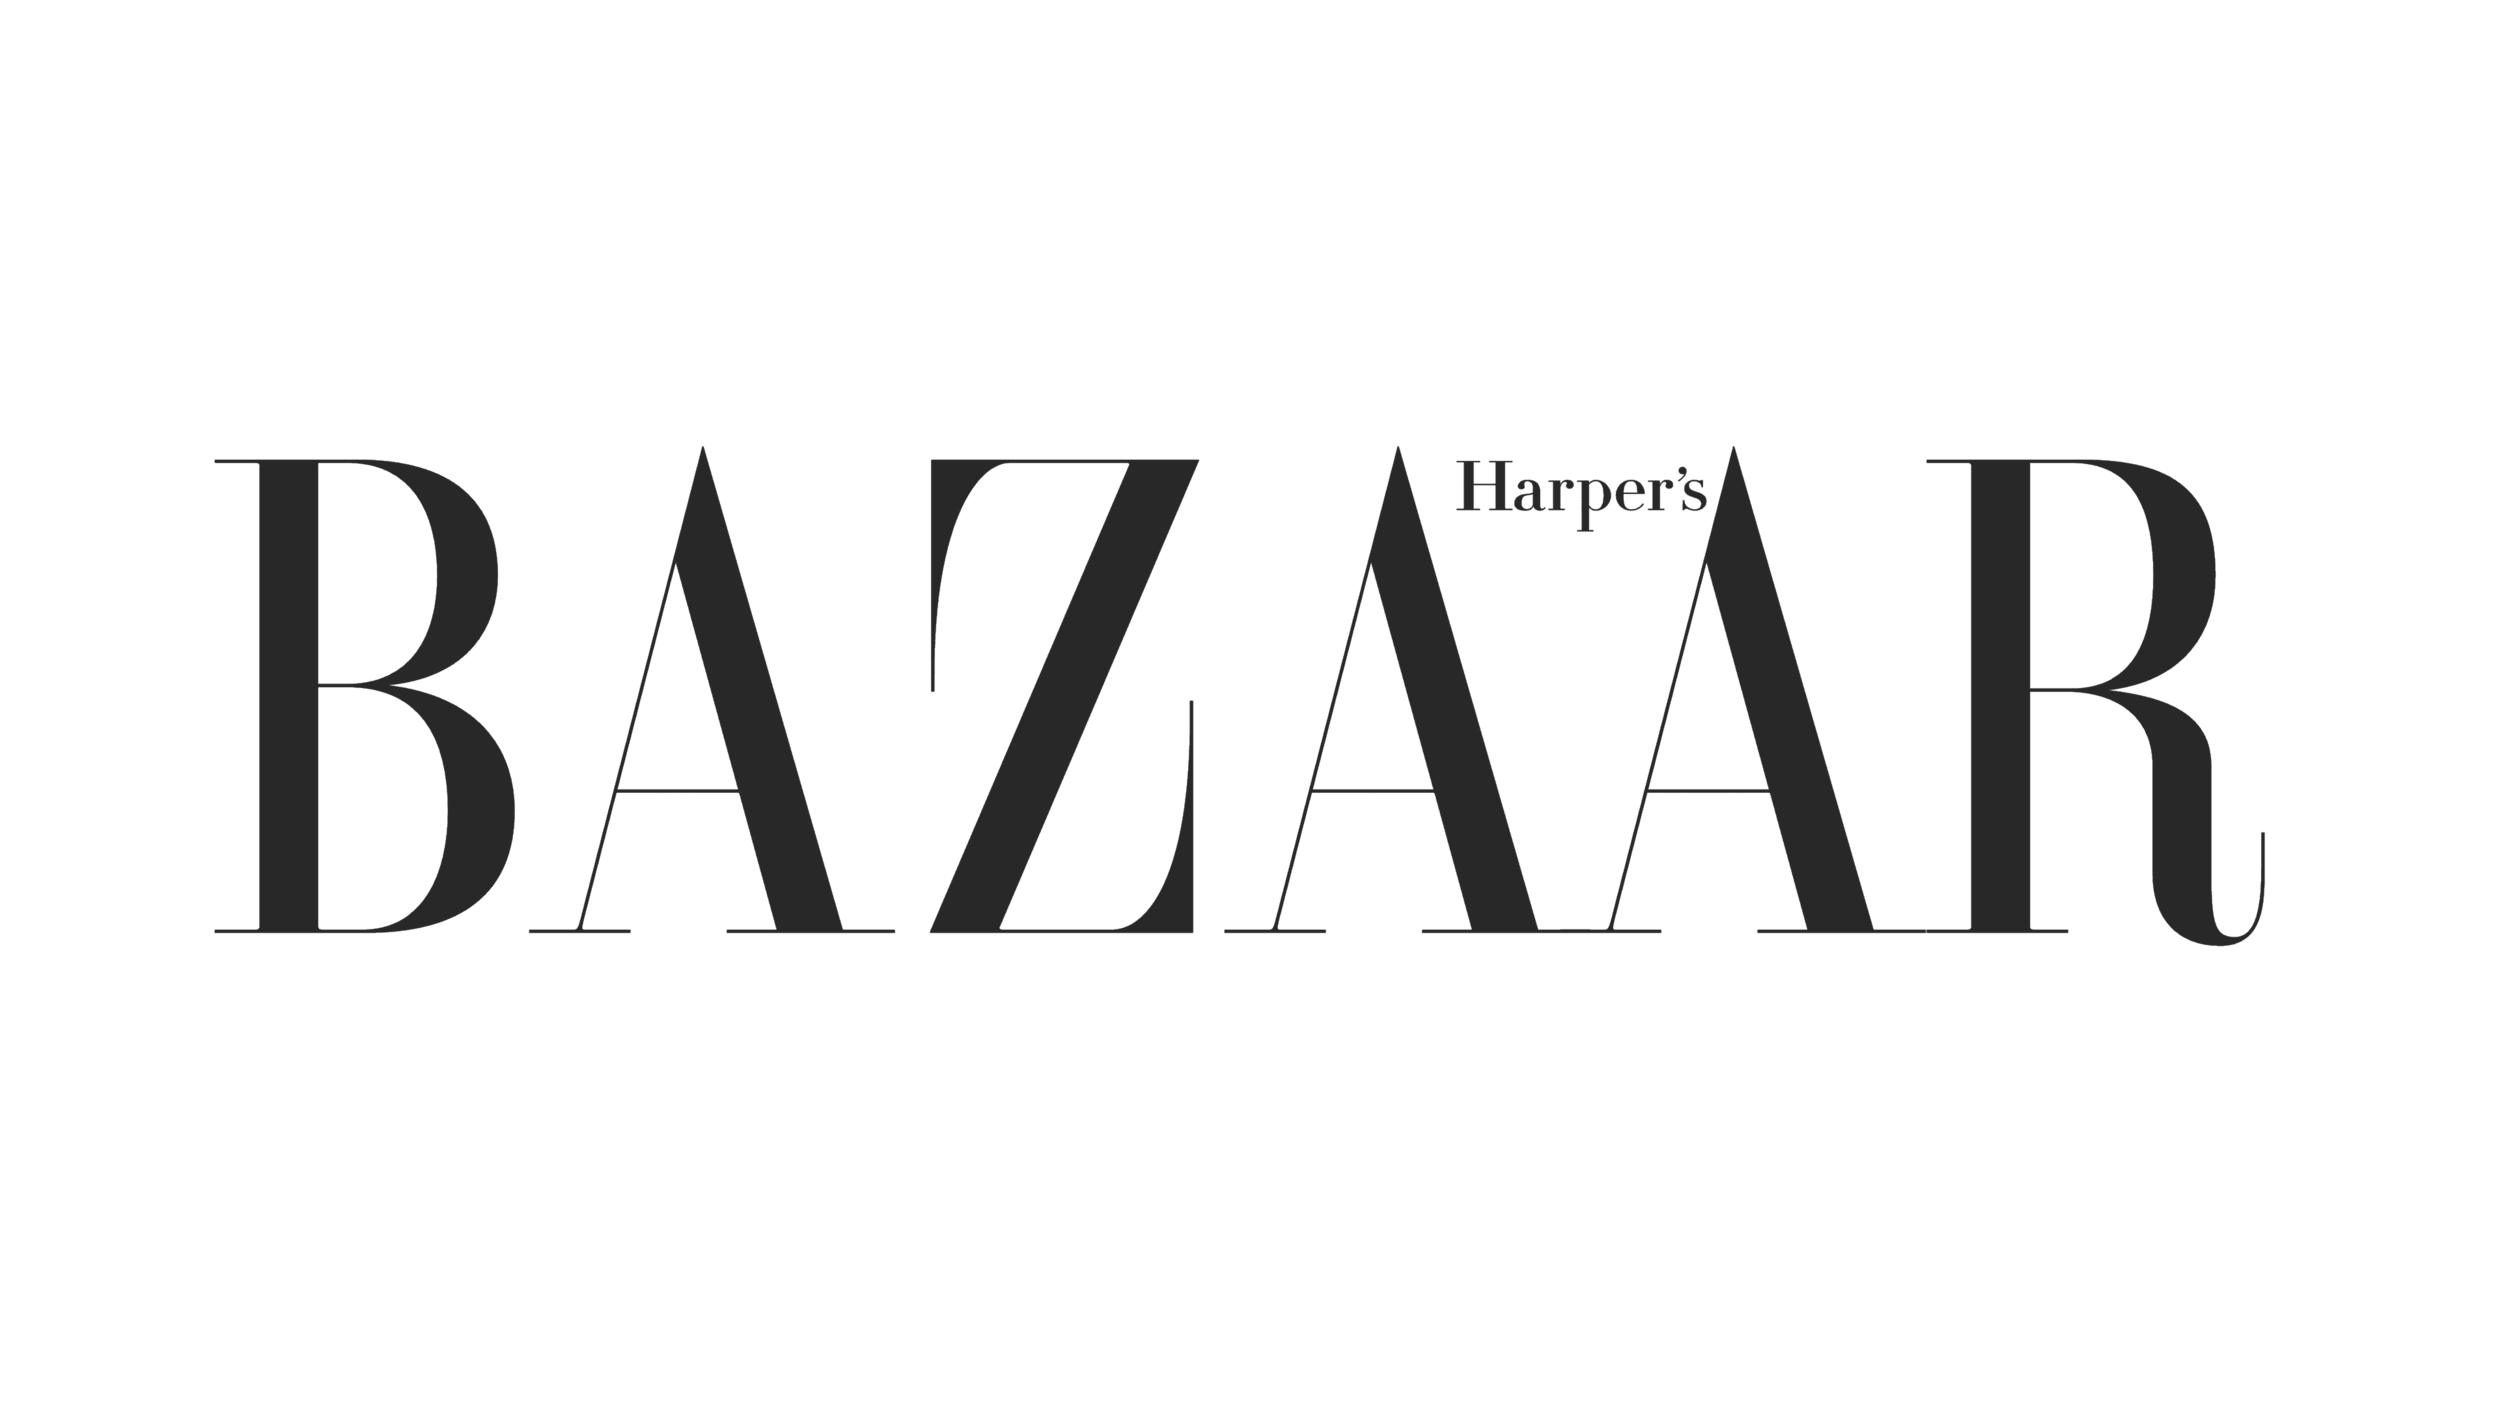 Harpers-Bazaar-logo.png